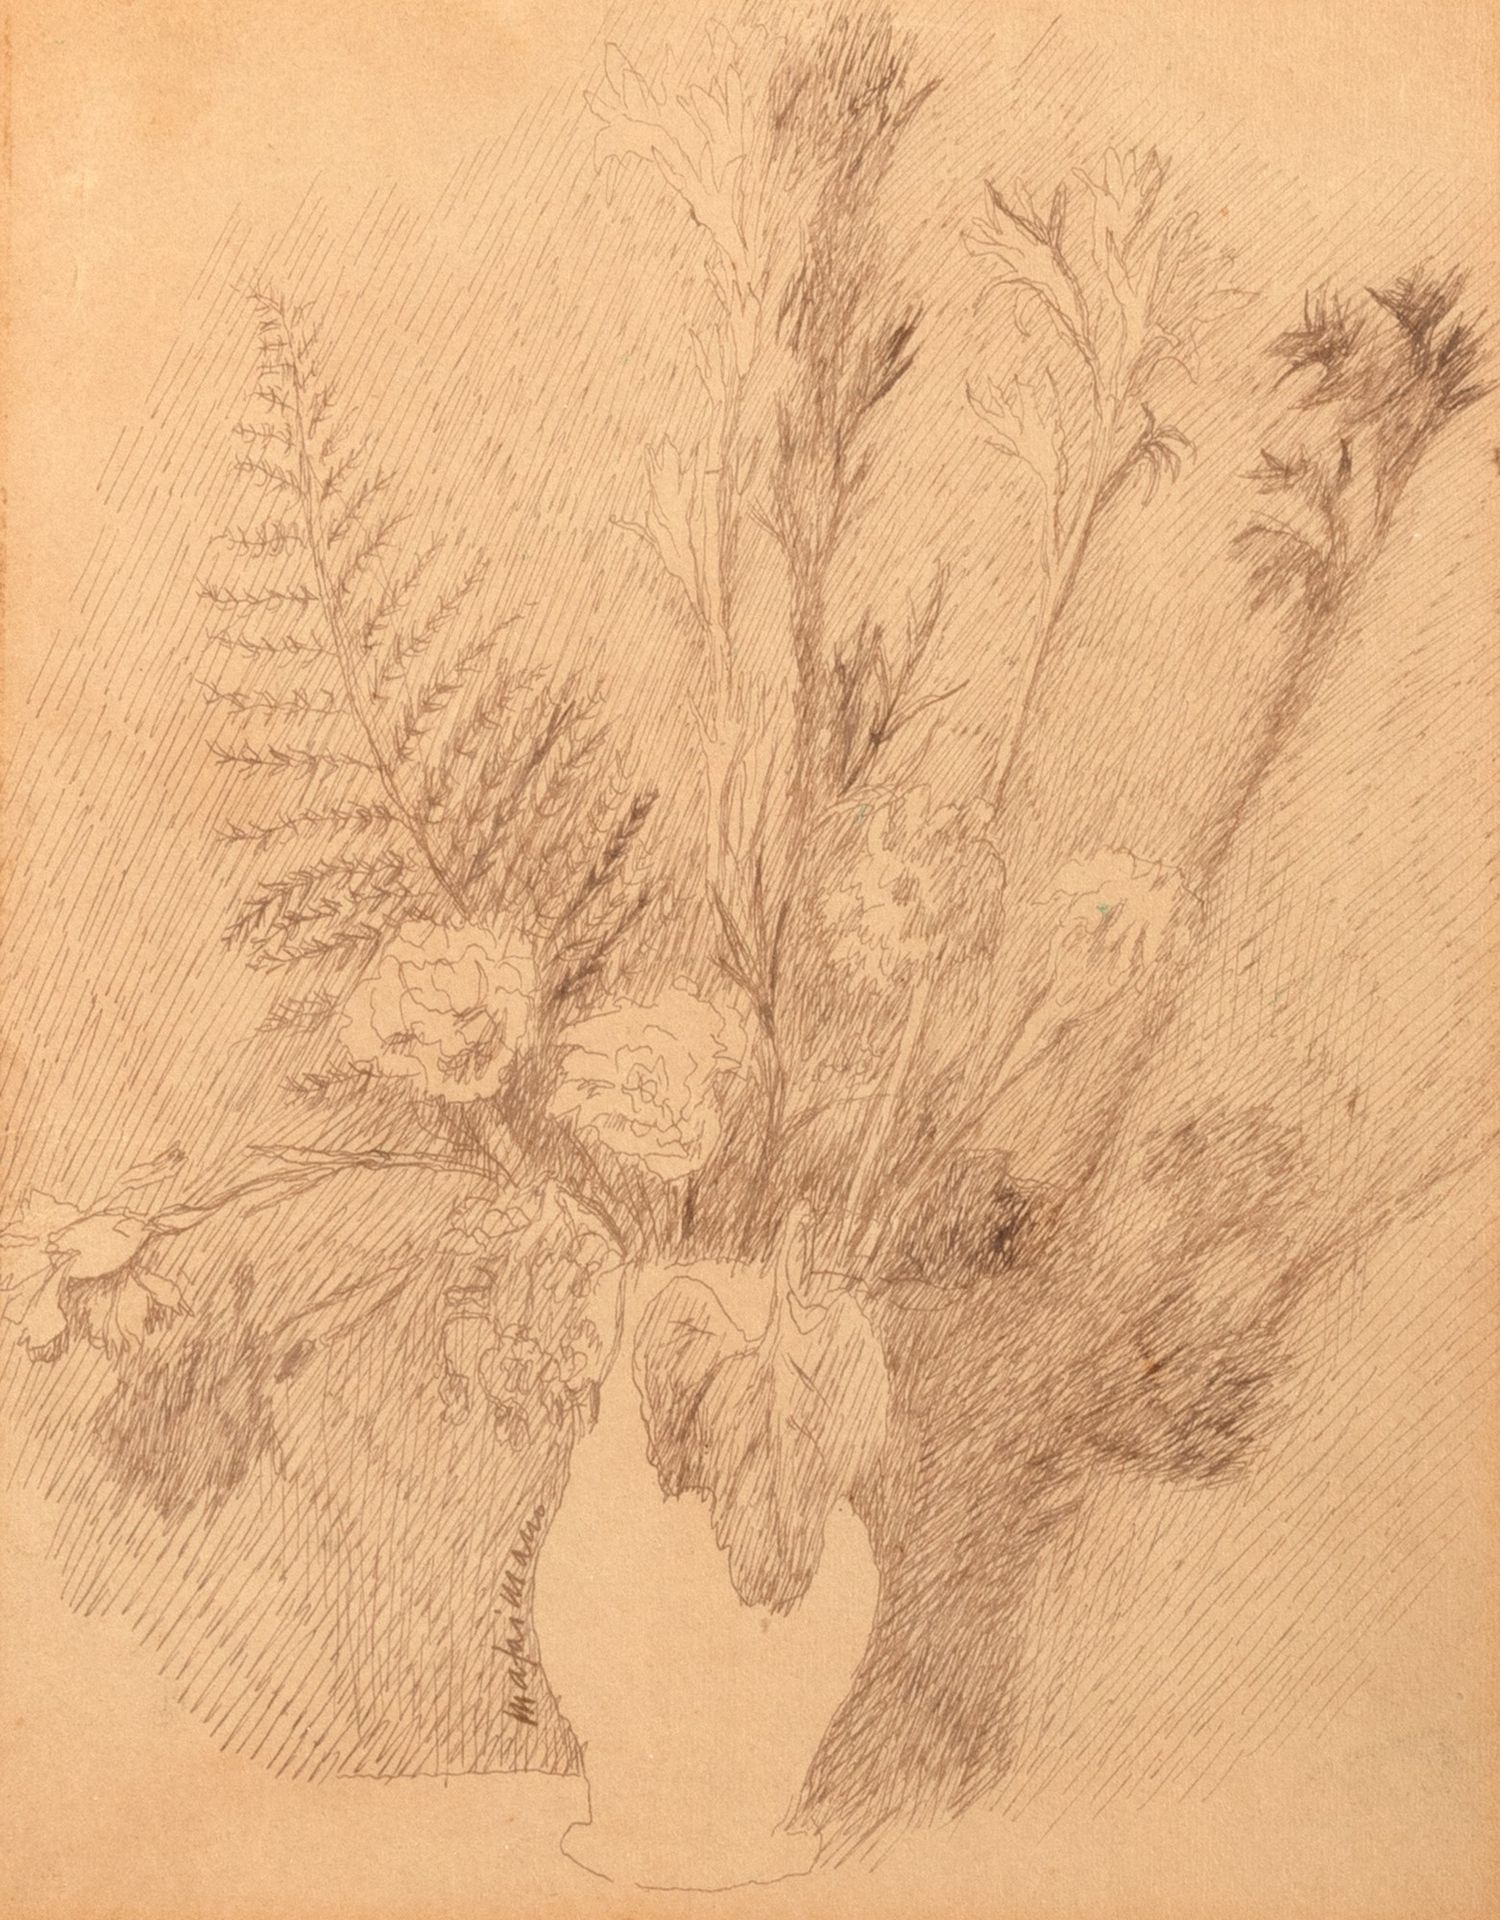 MARIO MAFAI Vase avec fleurs, vers 1932

crayon sur papier
24,5 x 19,5 cm
Signé &hellip;